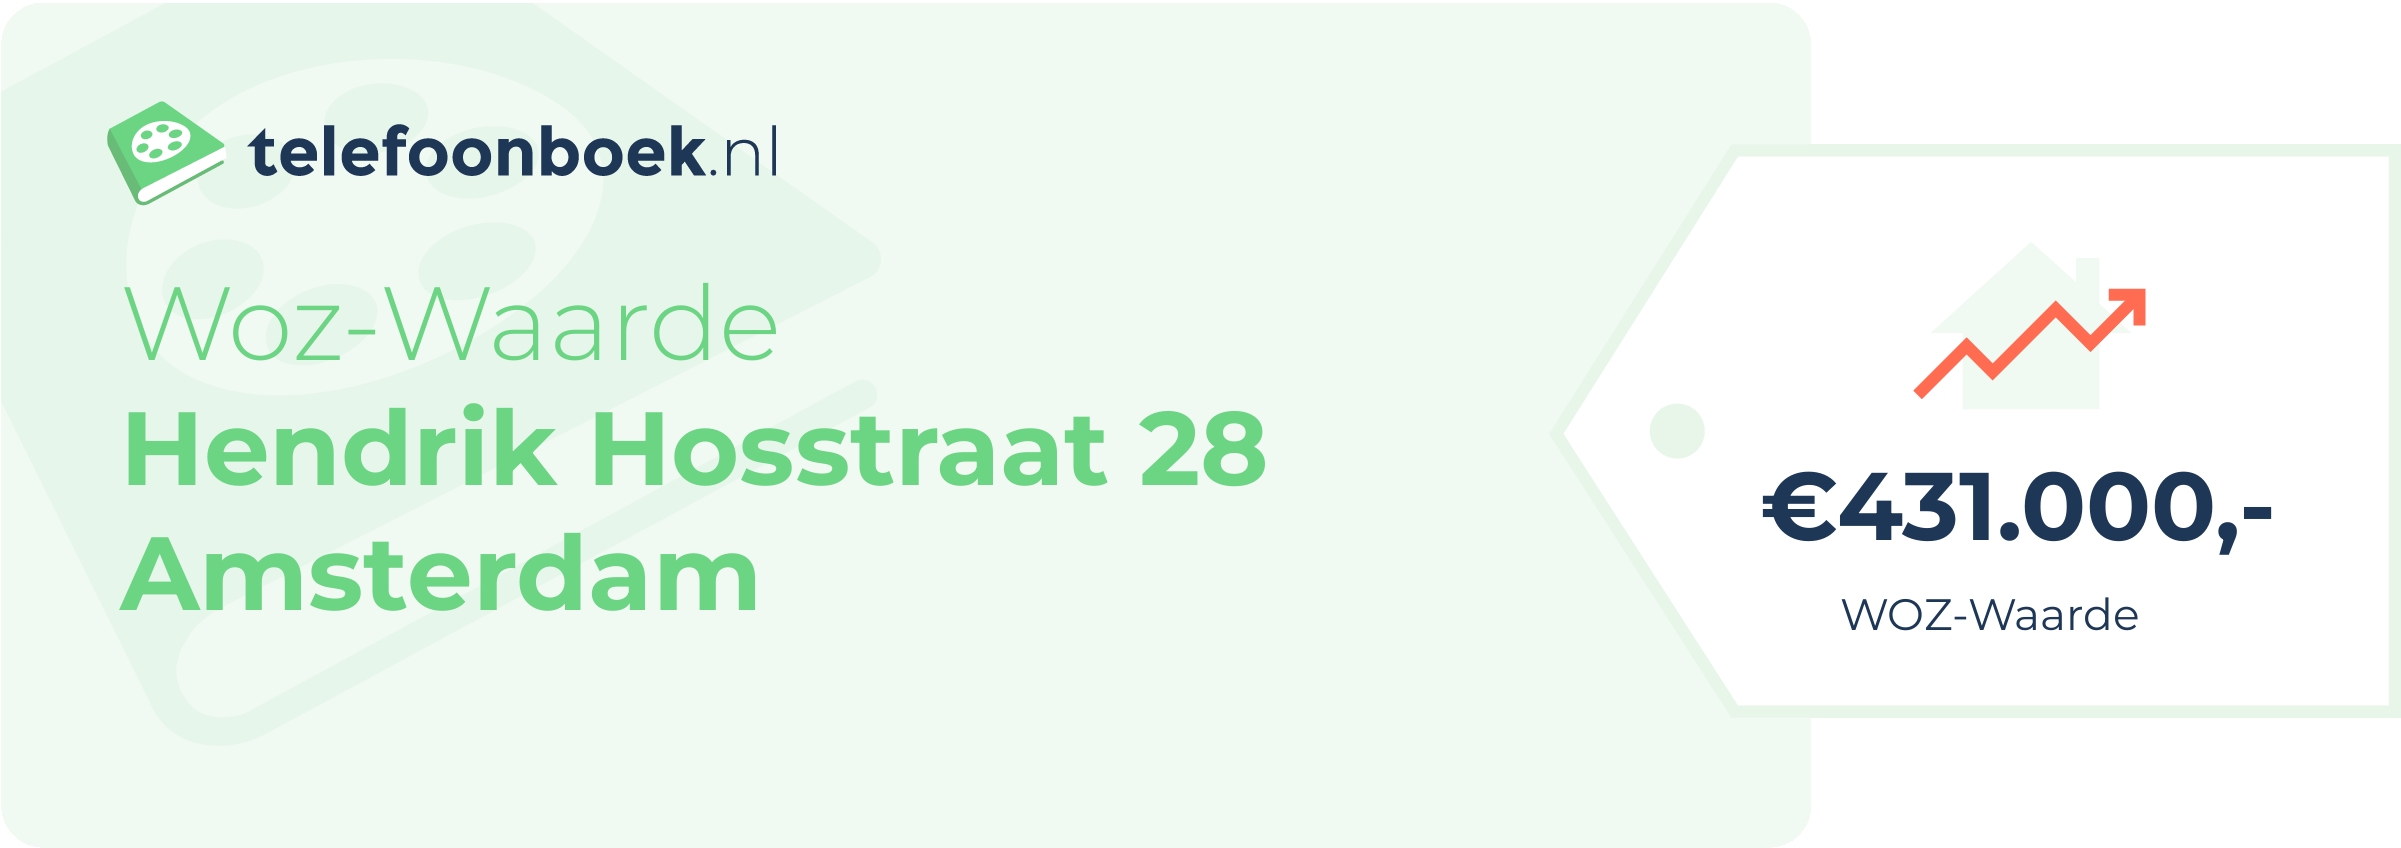 WOZ-waarde Hendrik Hosstraat 28 Amsterdam